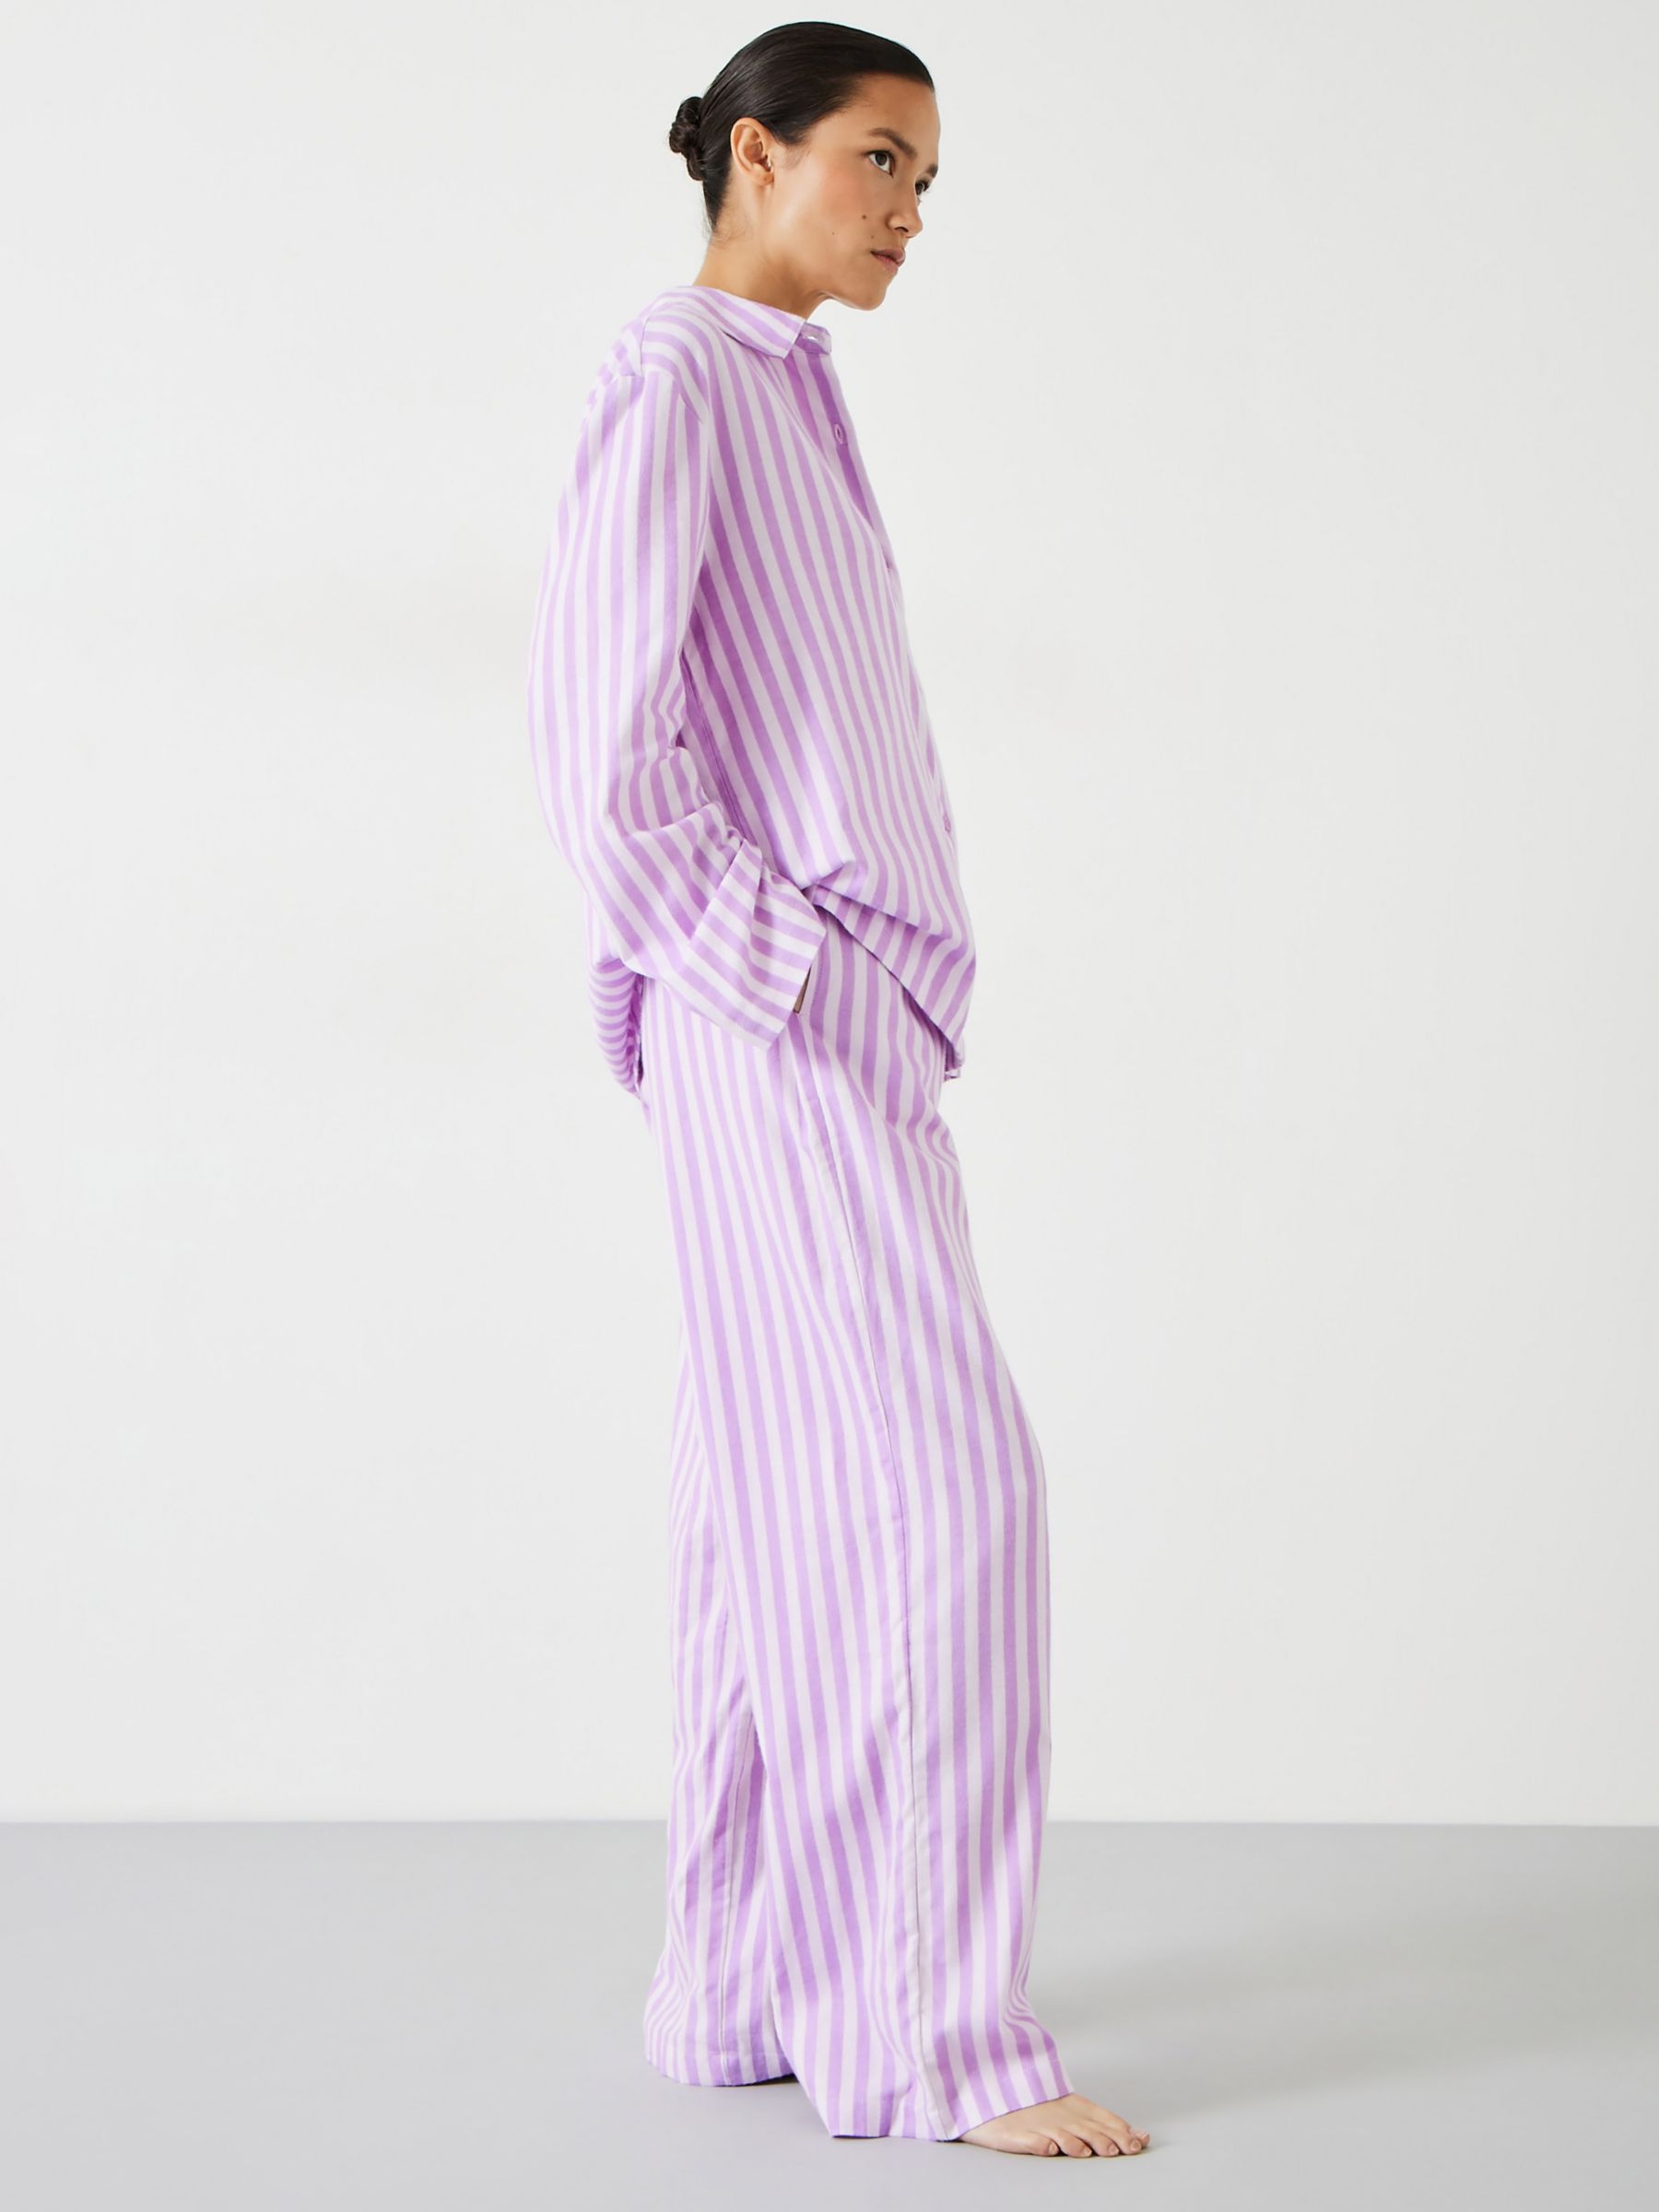 Buy Girls Pyjamas Online  Upto 54% OFF on Girls Night Pyjamas